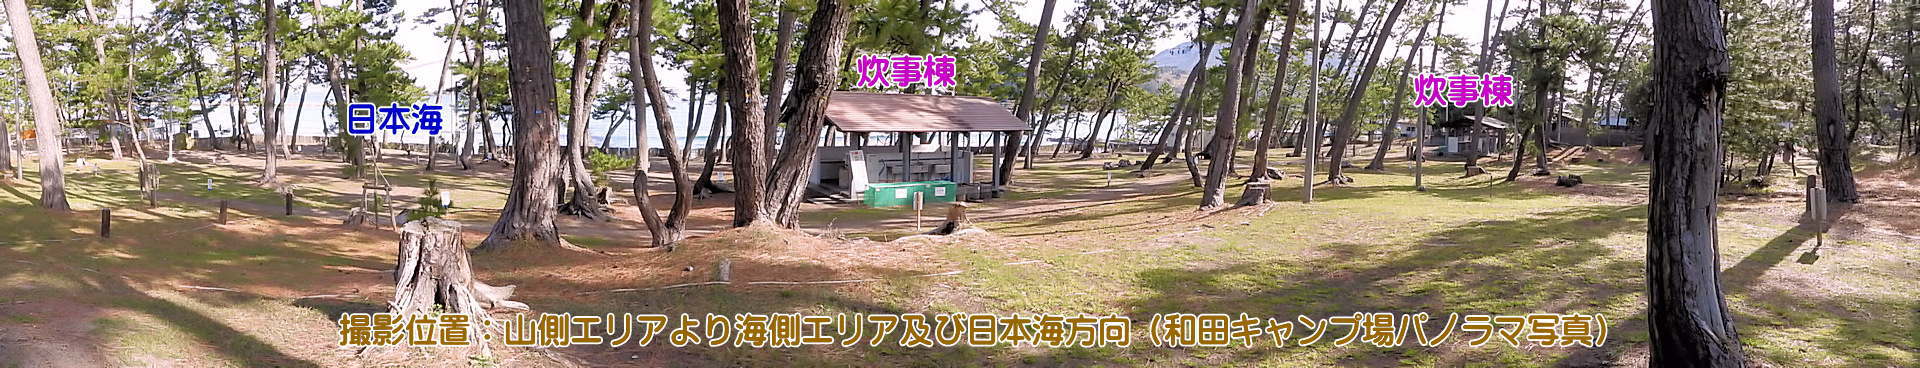 和田キャンプ場パノラマ写真